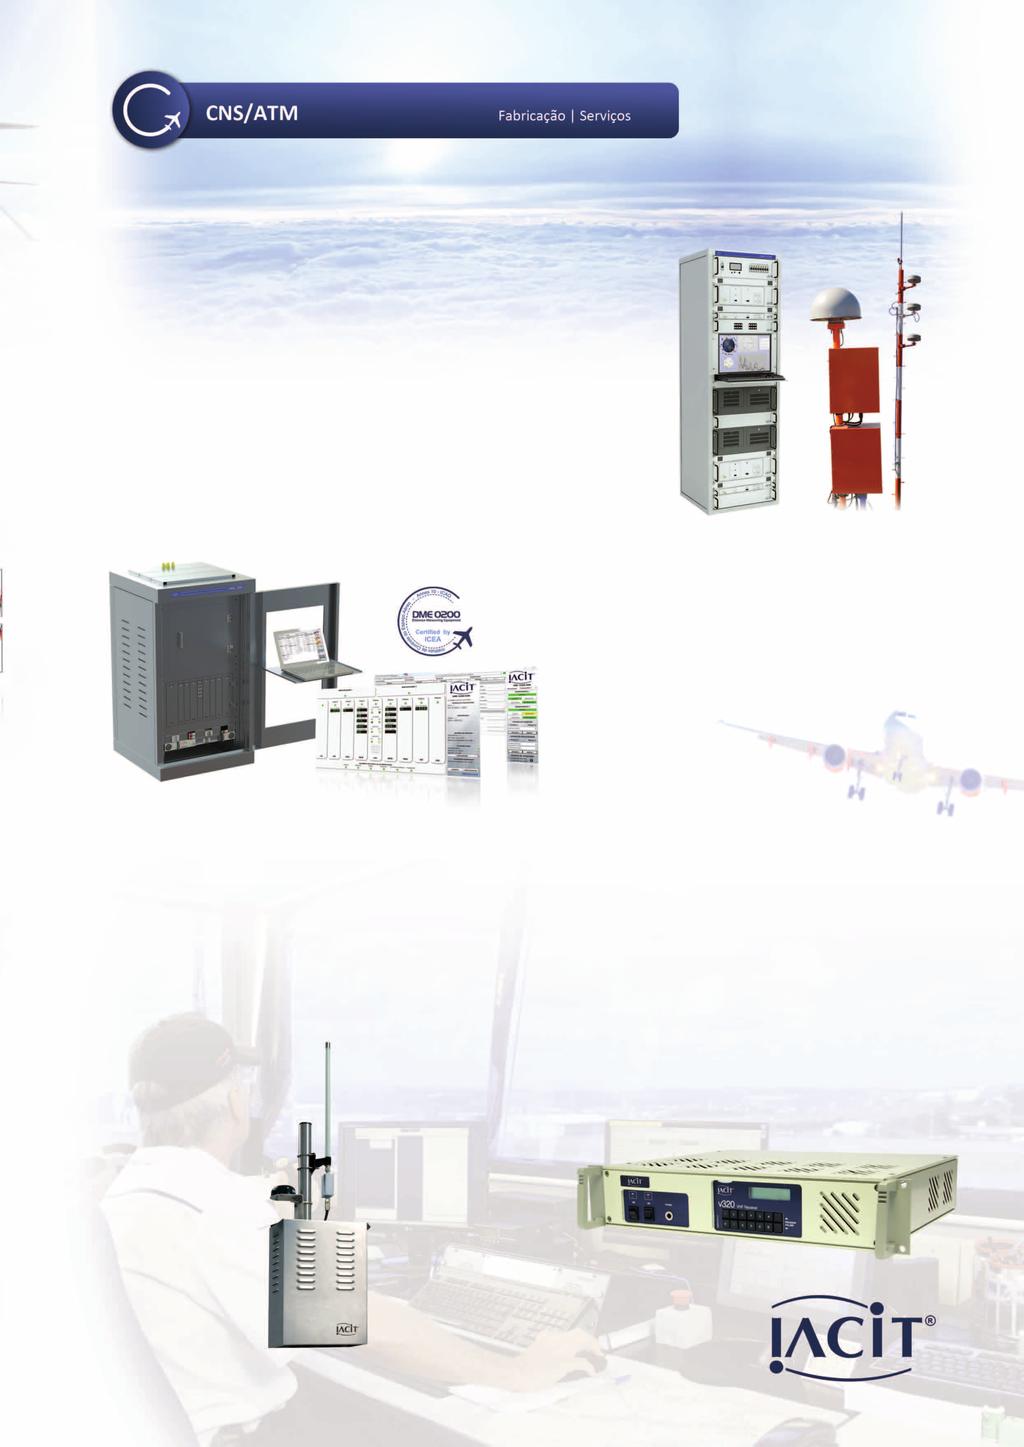 No segmnto de CNS/ATM, aiacit desenvolve, fabrica e instala equipamentos e sistemas aplicados à Ajuda a Navegação Aérea, Navegação Marítima, Control do Tráfico Aéreo Comunicação.